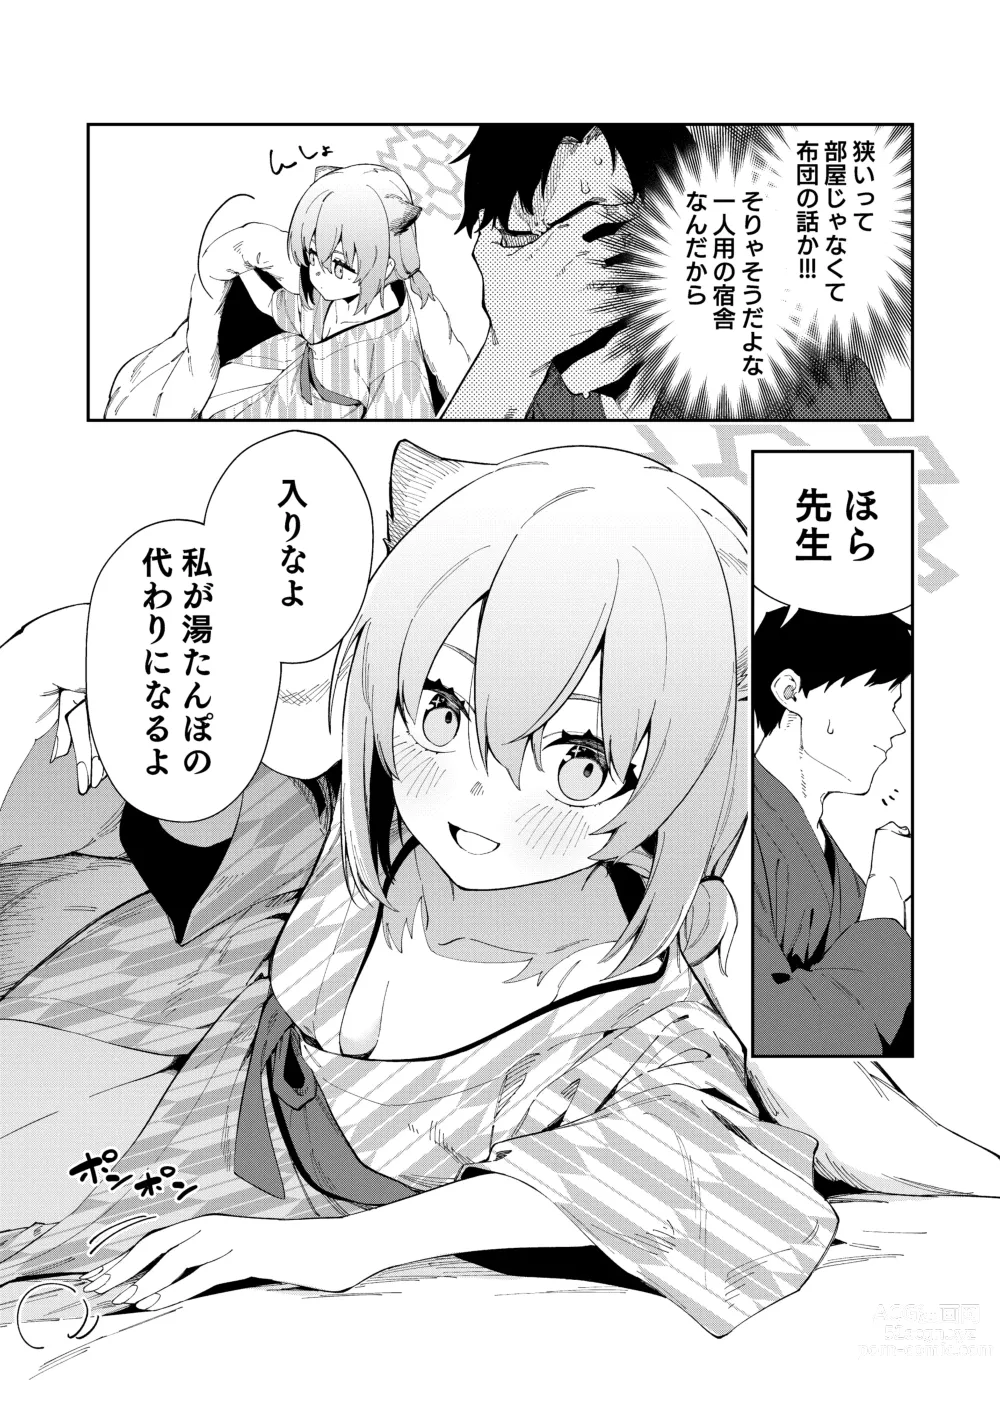 Page 9 of doujinshi Yukemuri wa Shigure moyou ni